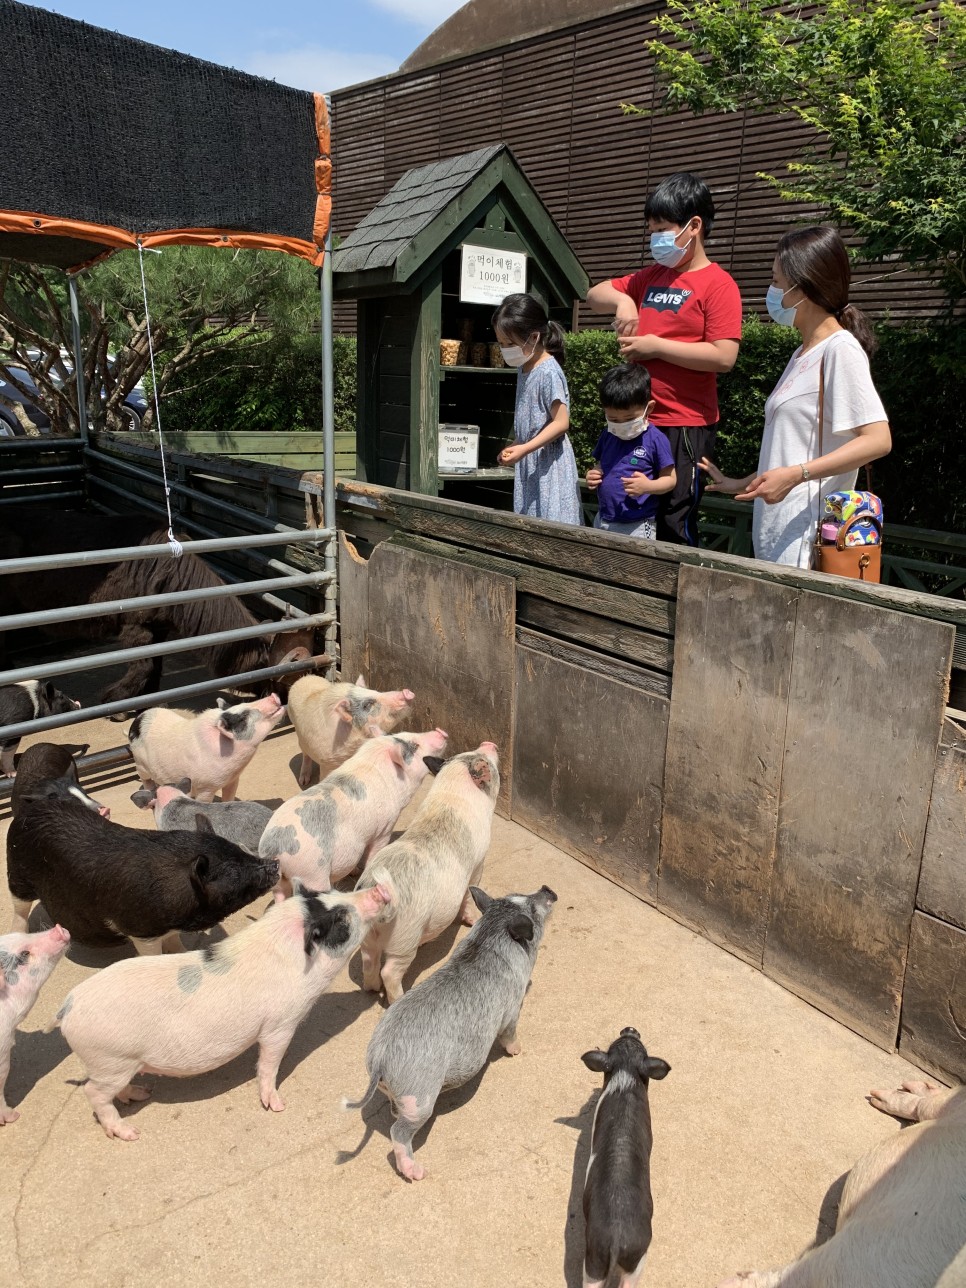 이천 돼지박물관 - 돼지에 대한 다양한 전시와 귀여운 애완돼지들을 만날 수 있는 곳